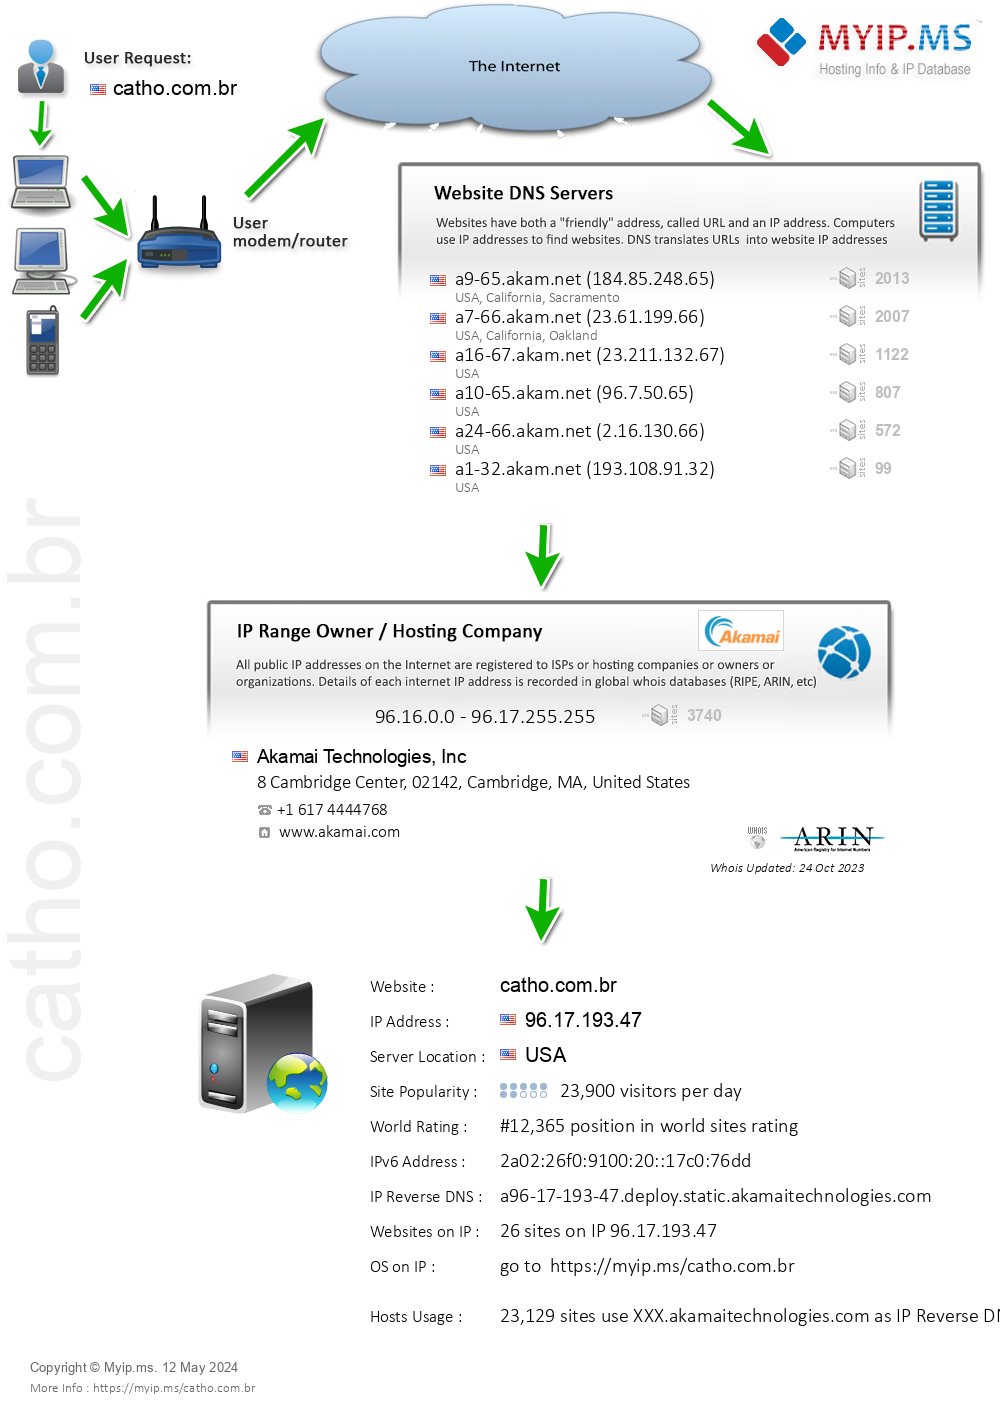 Catho.com.br - Website Hosting Visual IP Diagram